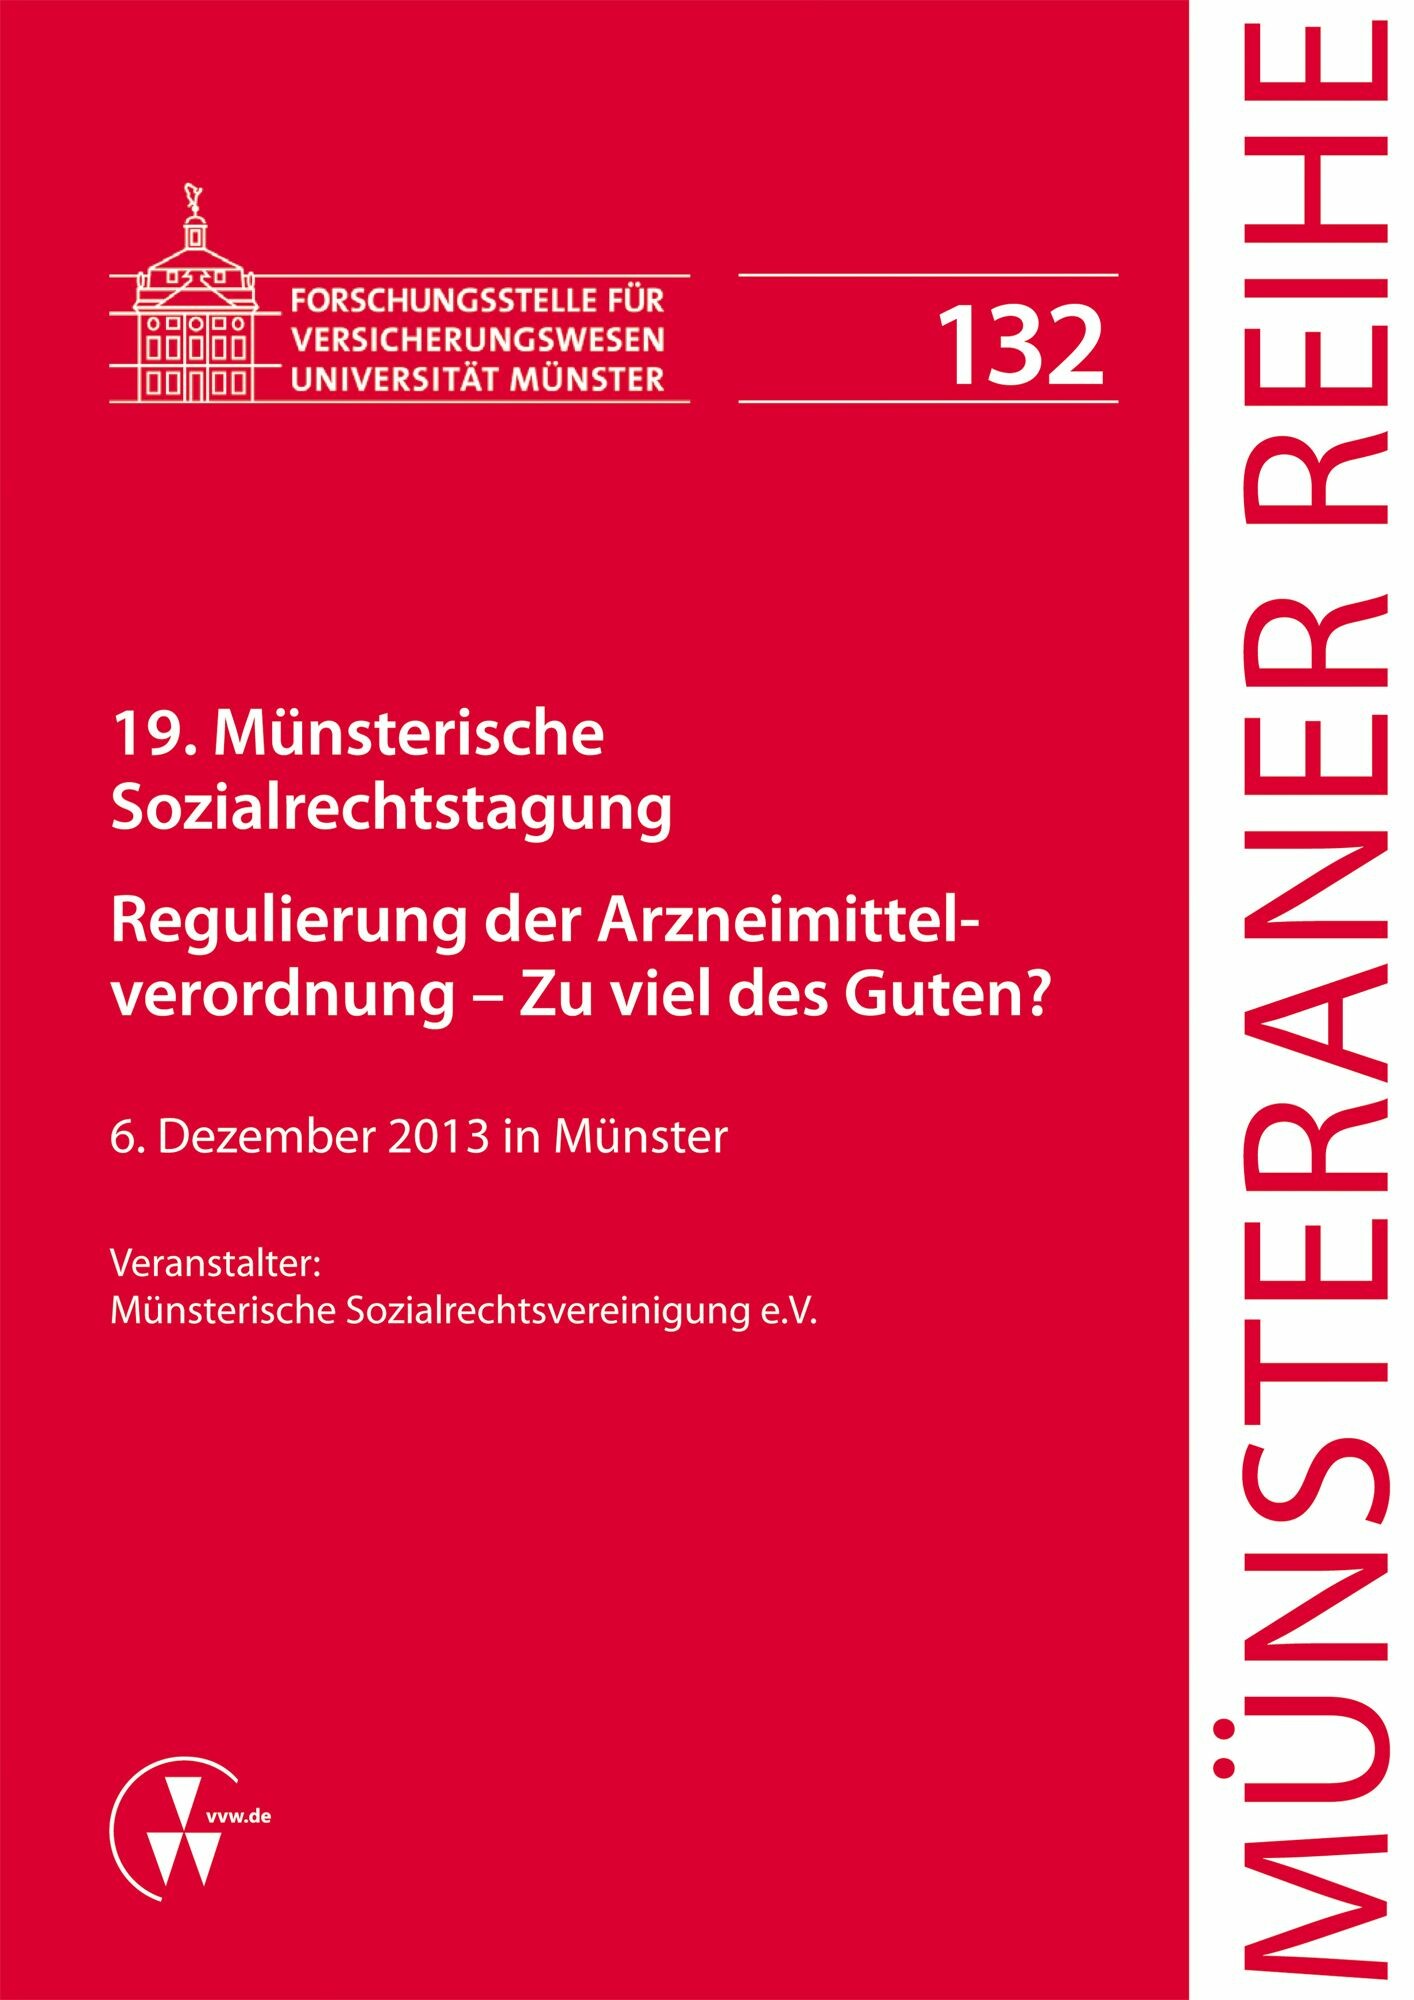 19. Münsterische Sozialrechtstagung